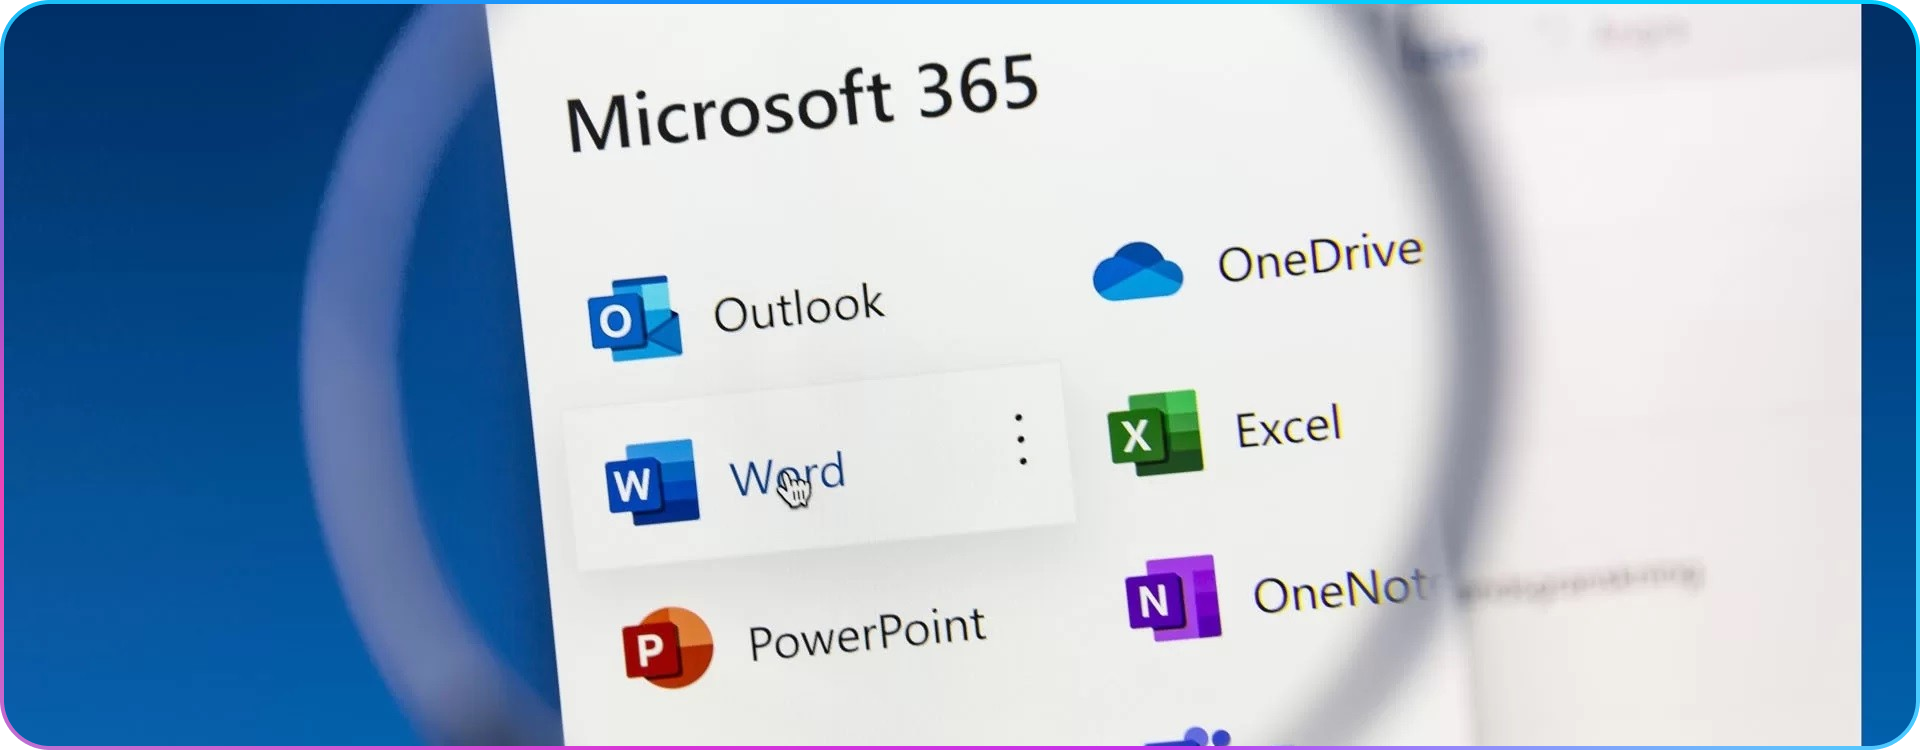 Jaka jest różnica między Microsoft 365 a Office 2019? Omawiamy cechy charakterystyczne dwóch wersji oprogramowania biurowego